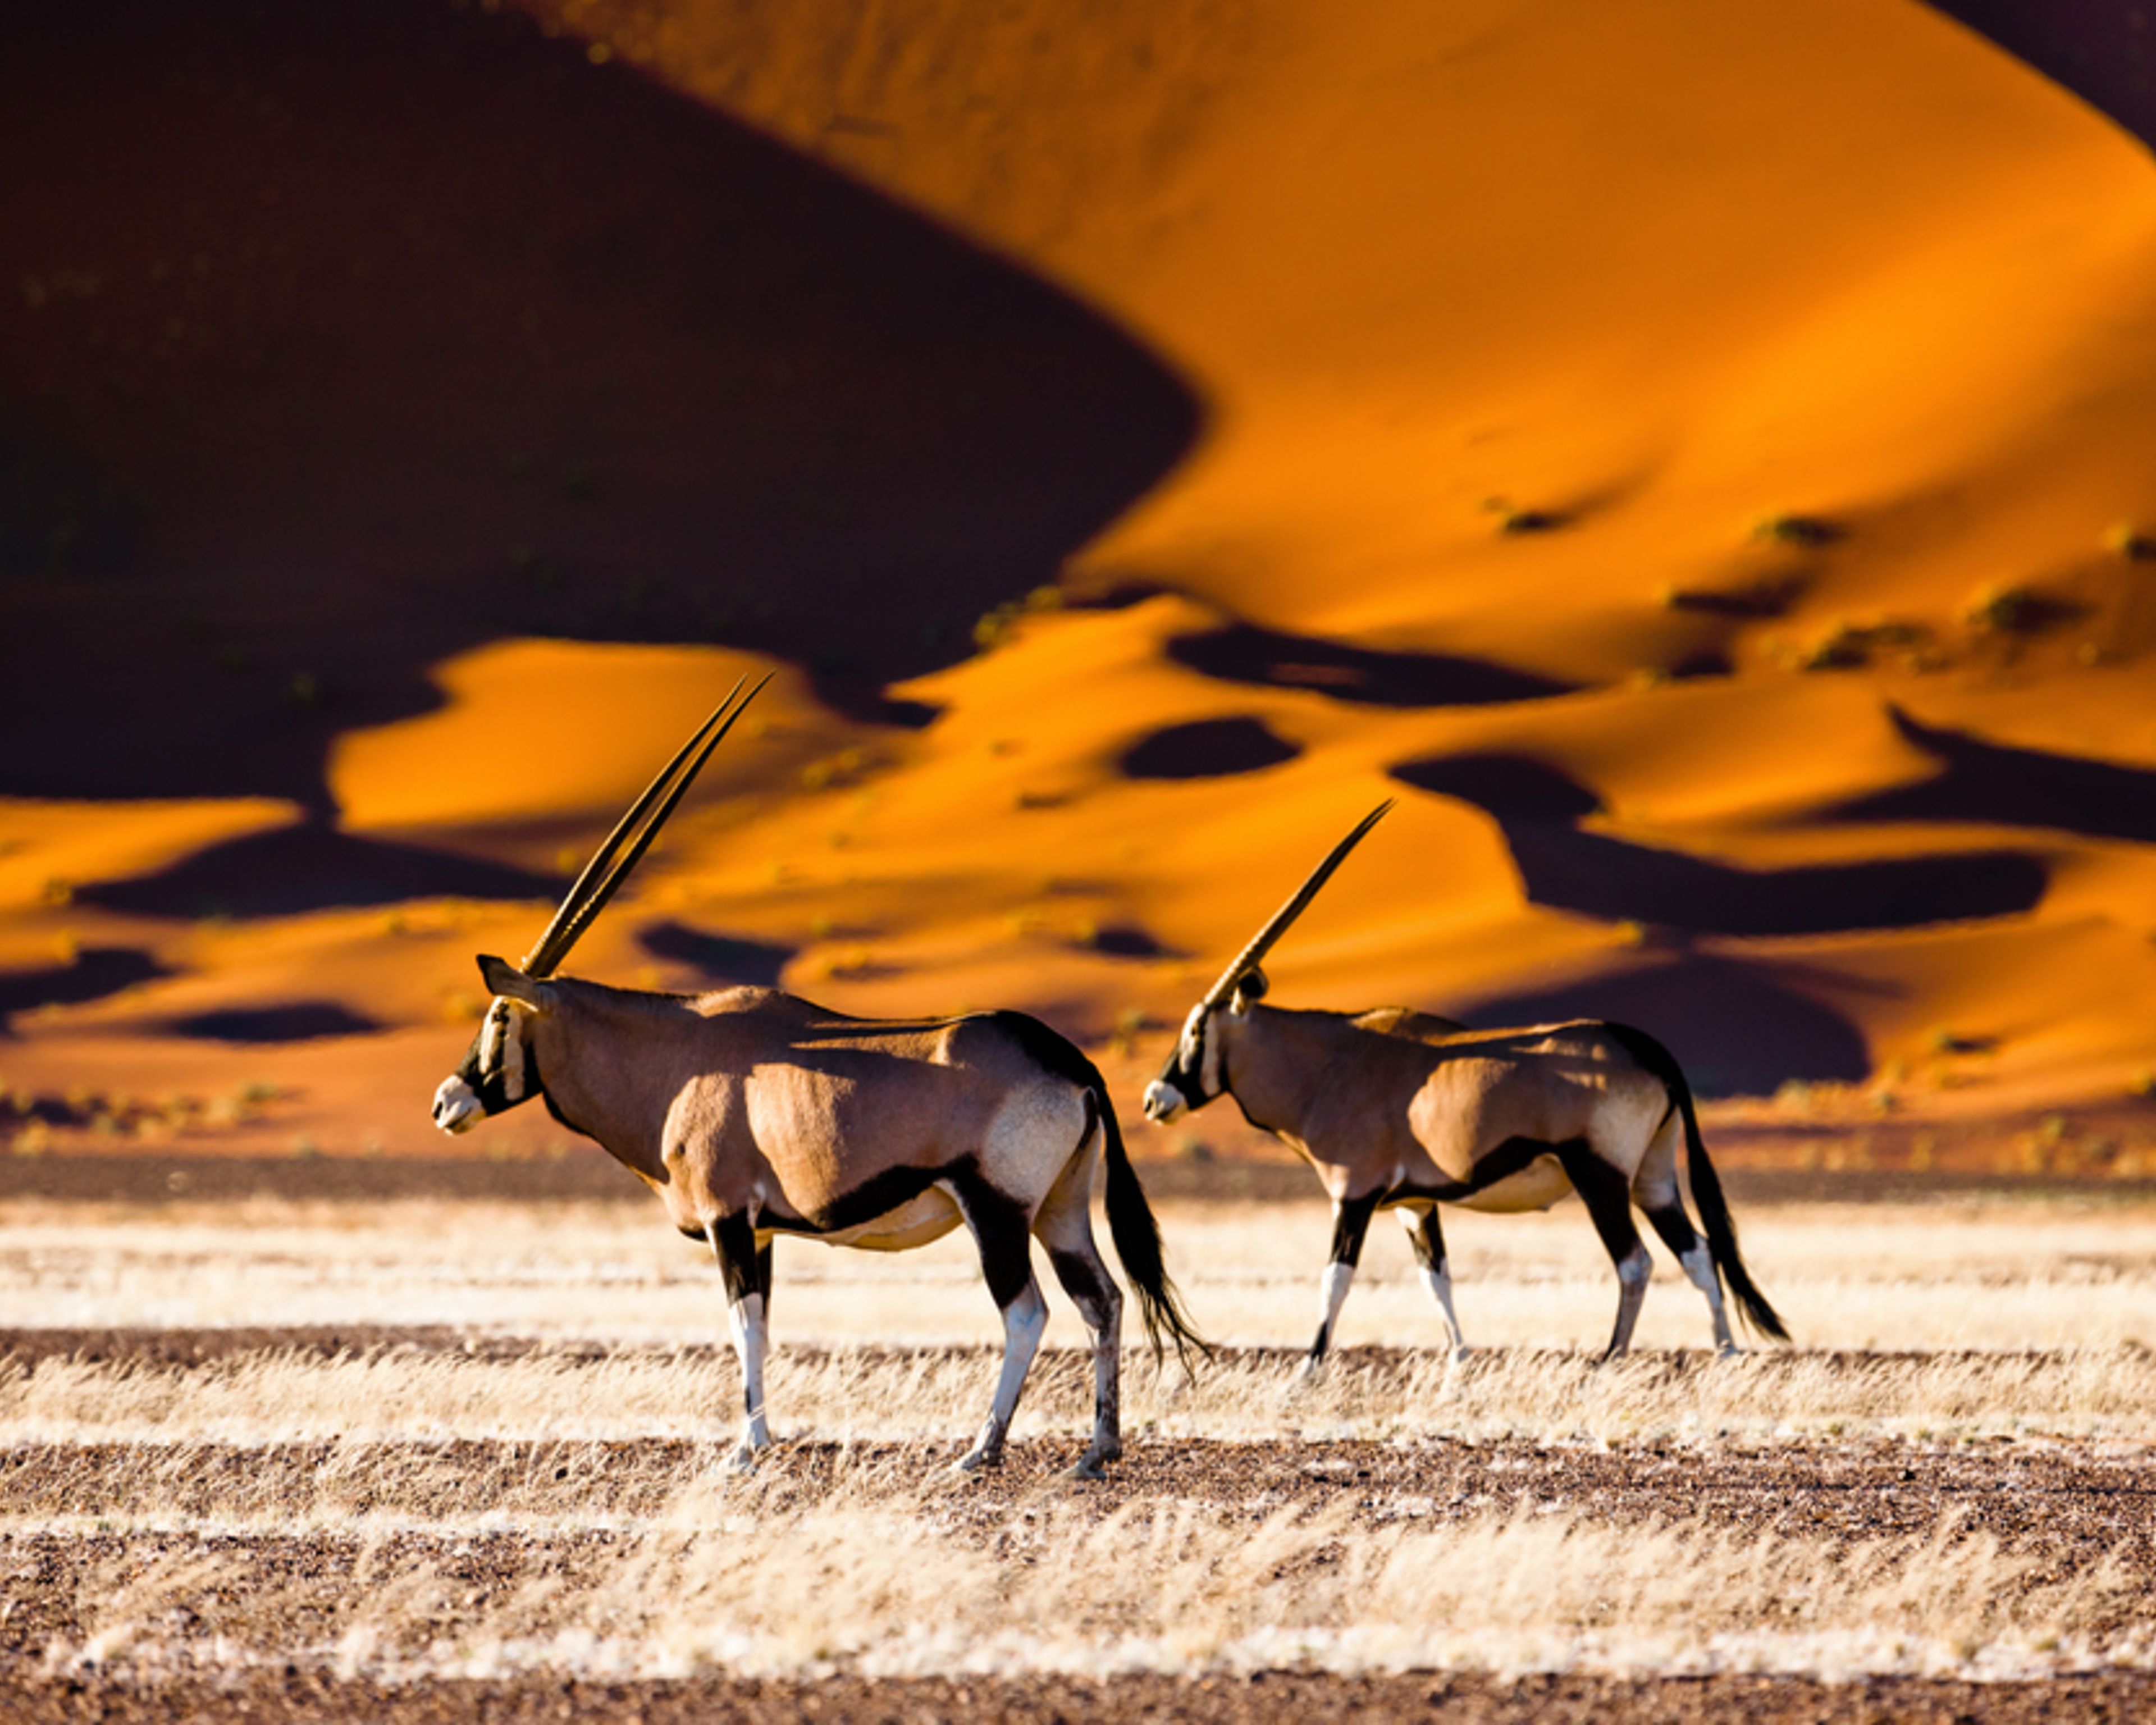 Desierto, etnias y safari